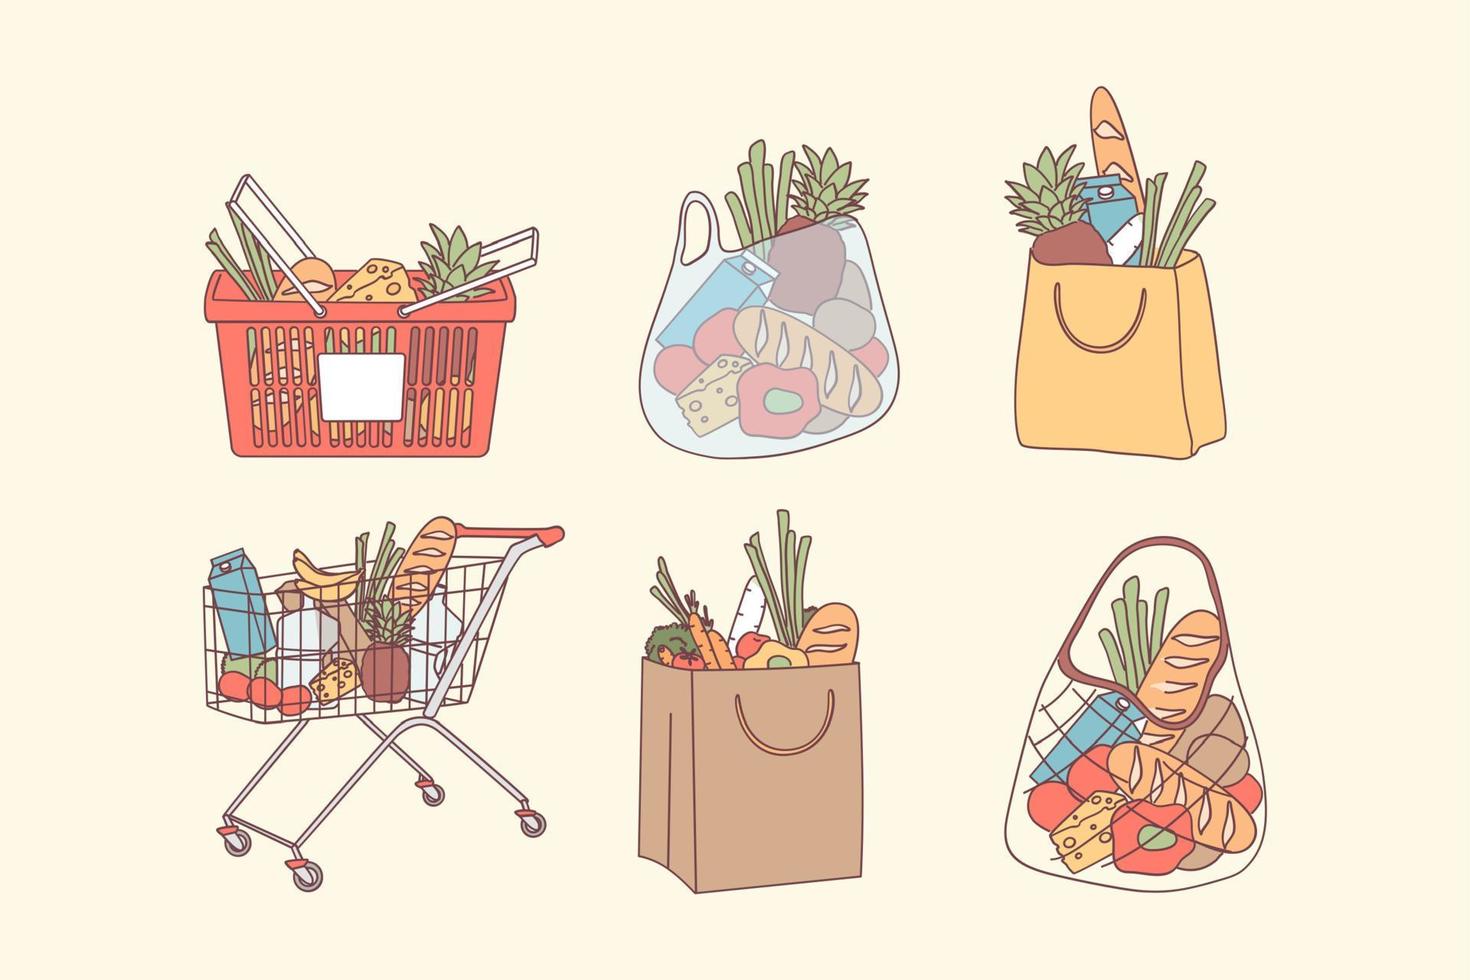 bolsas de compras y concepto de compras de comestibles. bolsas y cestas llenas con alimentos naturales, frutas y verduras orgánicas para una alimentación limpia ilustración vectorial de dieta saludable. productos de tiendas departamentales vector